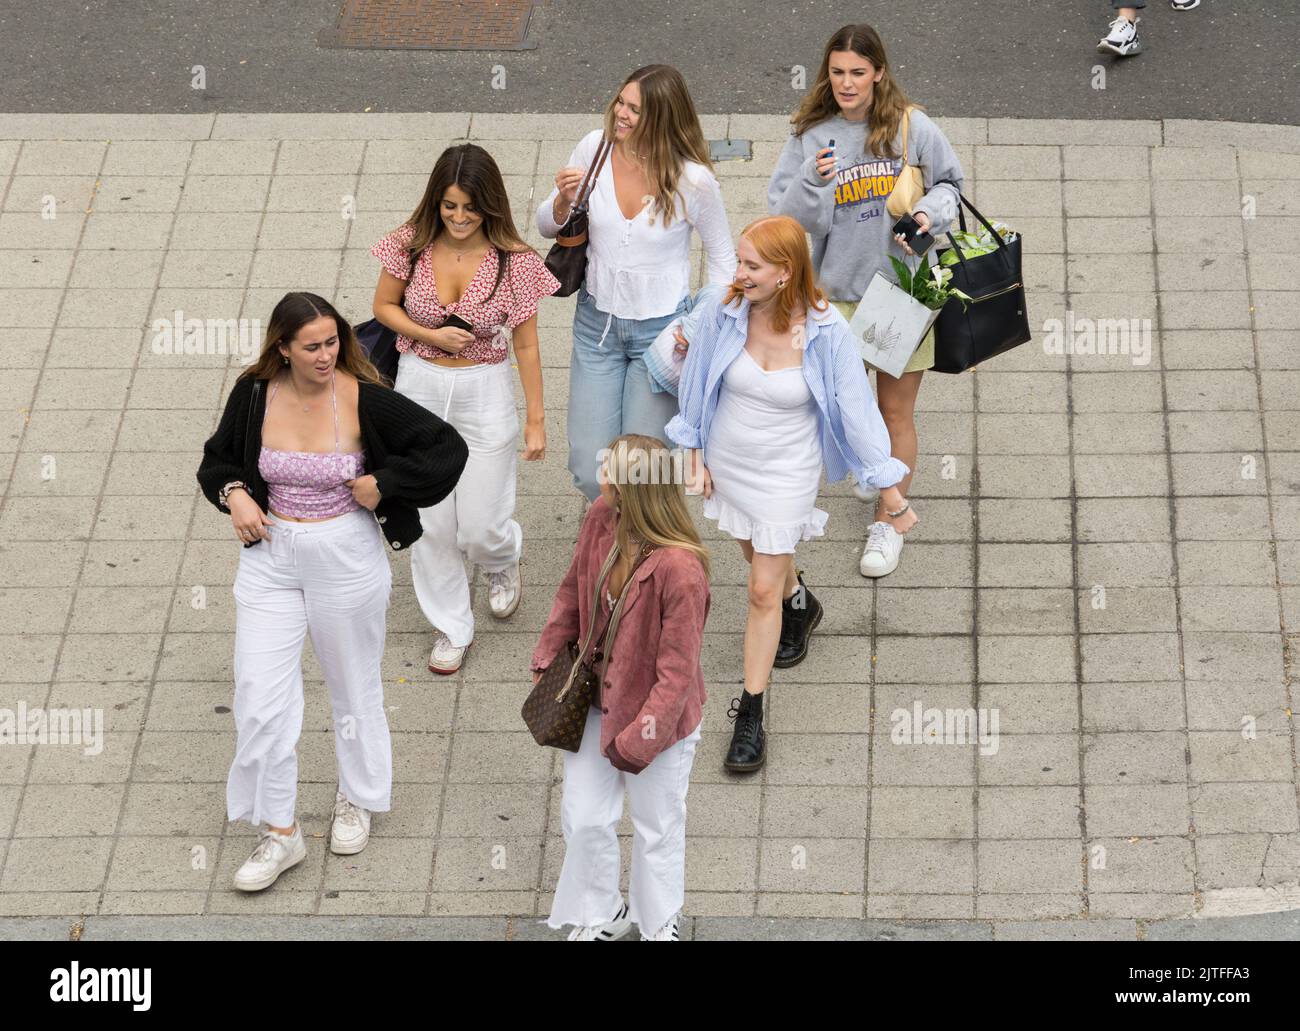 Un grupo de mujeres jóvenes en el centro de Londres Foto de stock